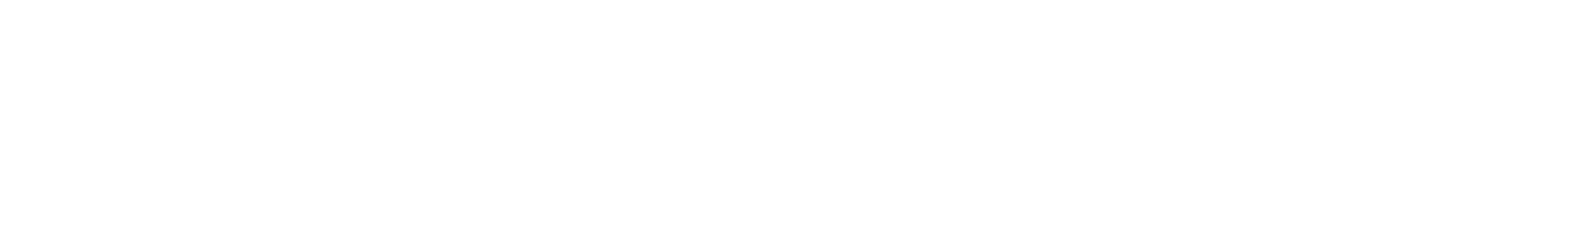 Holmen
 Logo groß für dunkle Hintergründe (transparentes PNG)